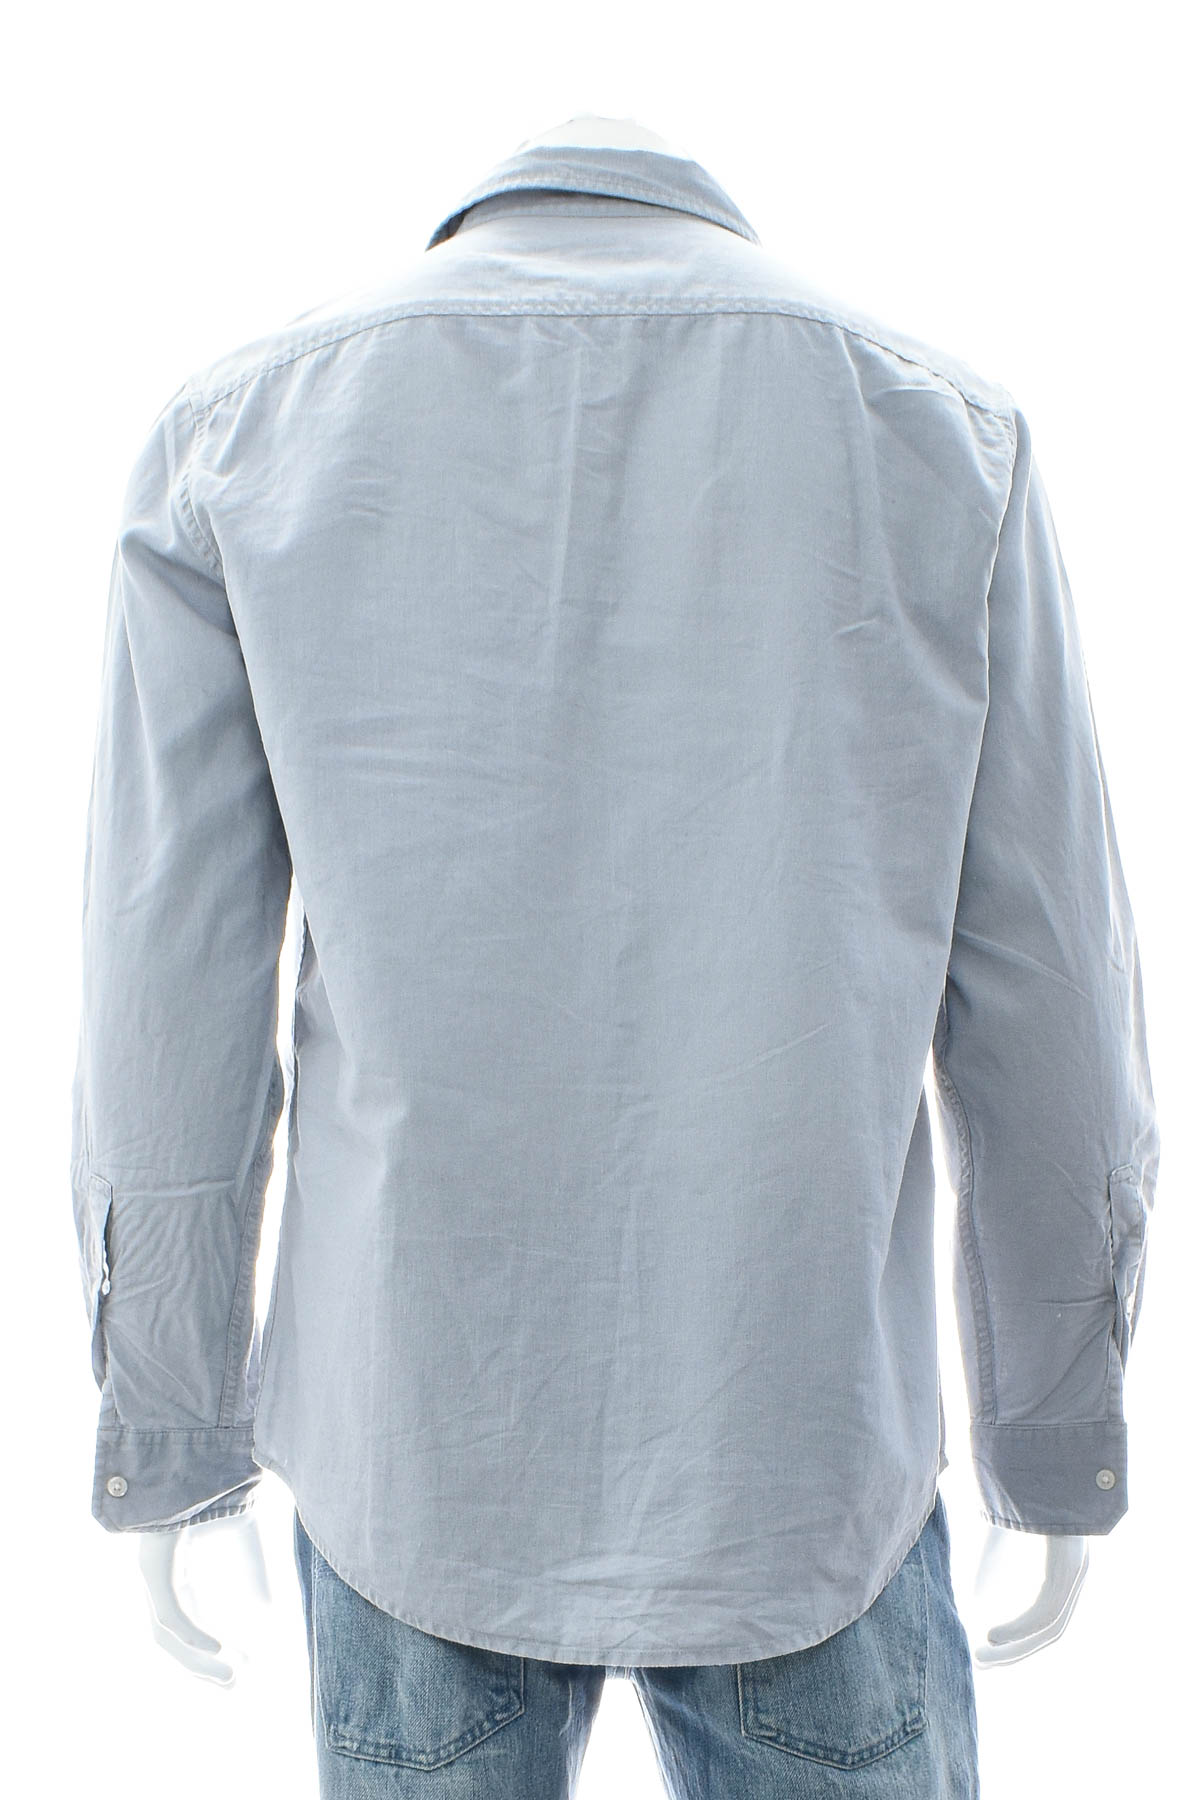 Ανδρικό πουκάμισο - Michael Kors - 1